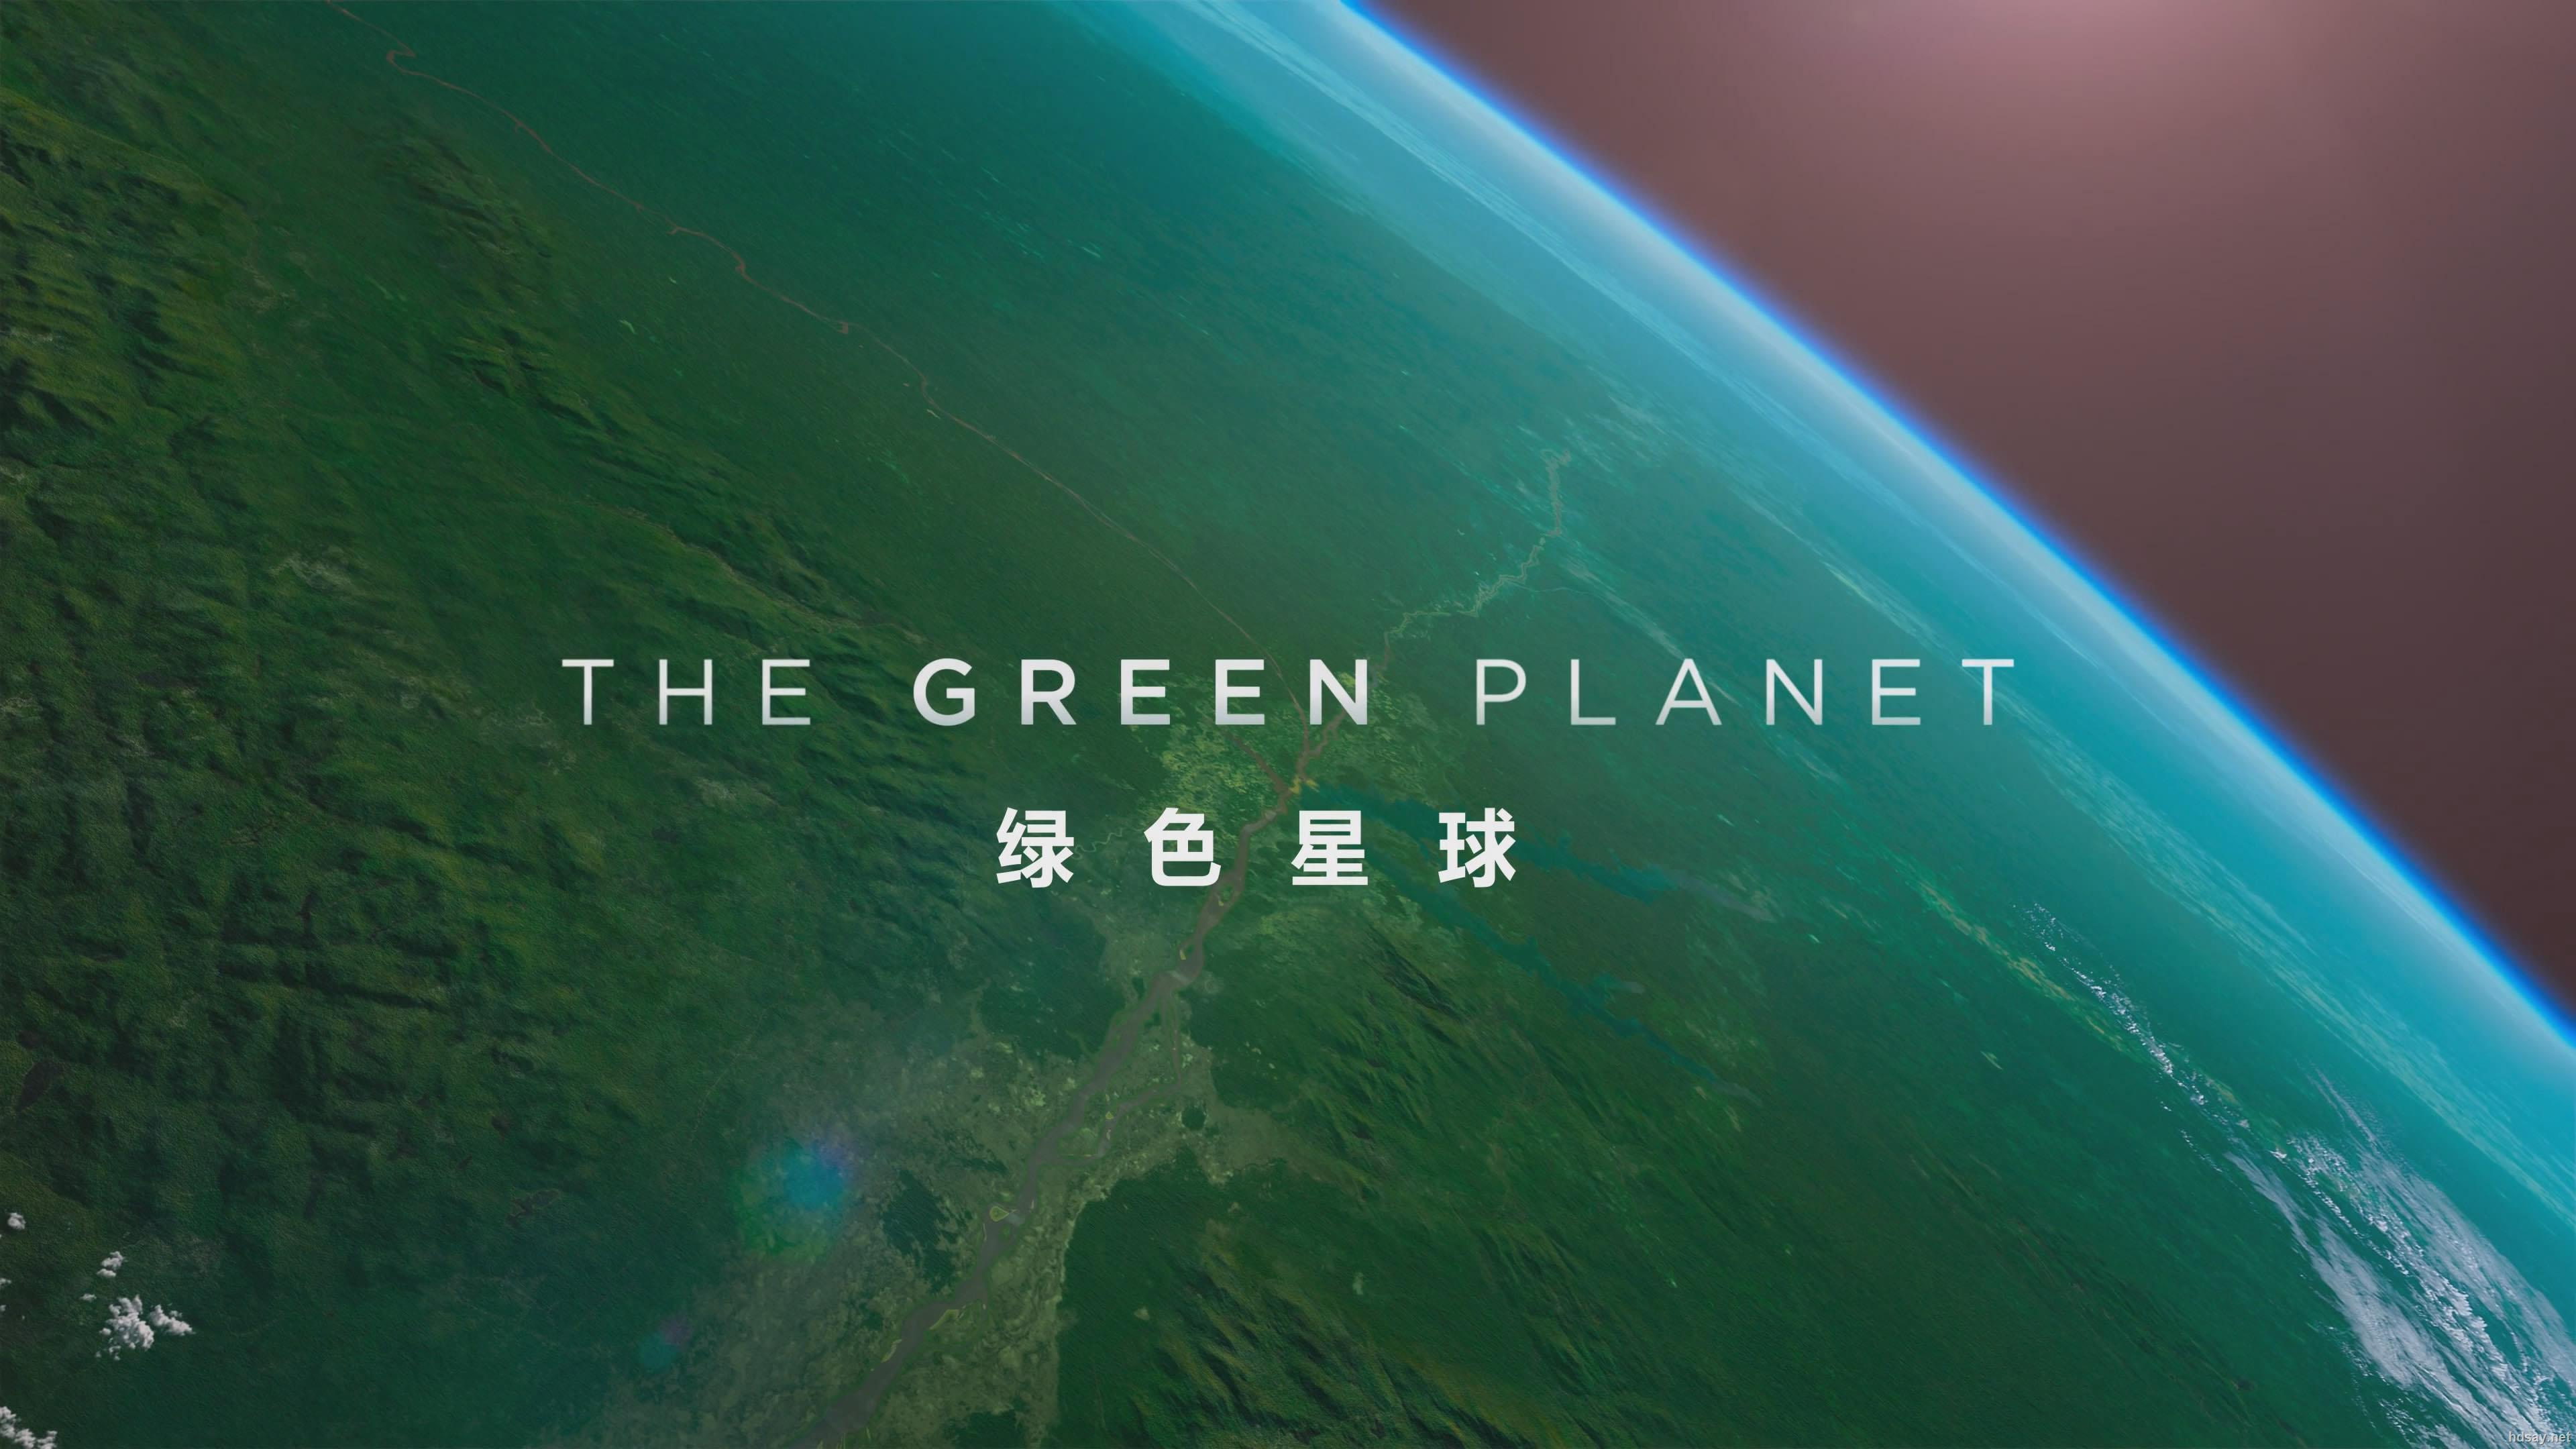 BBC绿色星球